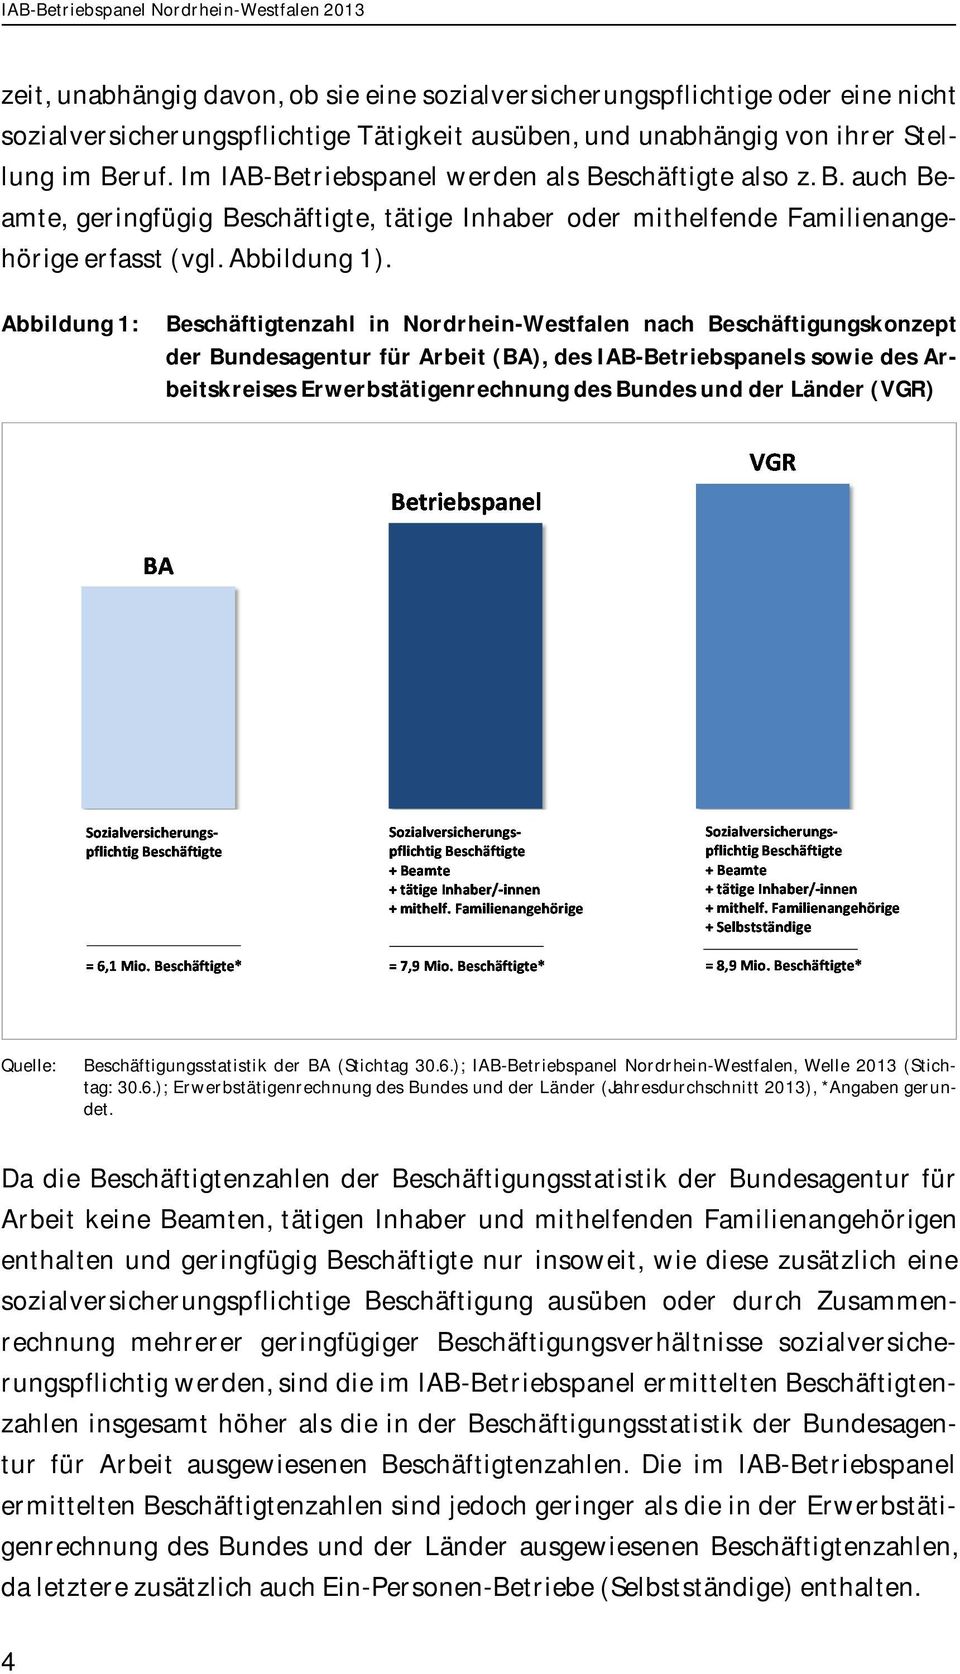 Abbildung 1: Beschäftigtenzahl in Nordrhein-Westfalen nach Beschäftigungskonzept der Bundesagentur für Arbeit (BA), des IAB-Betriebspanels sowie des Arbeitskreises Erwerbstätigenrechnung des Bundes